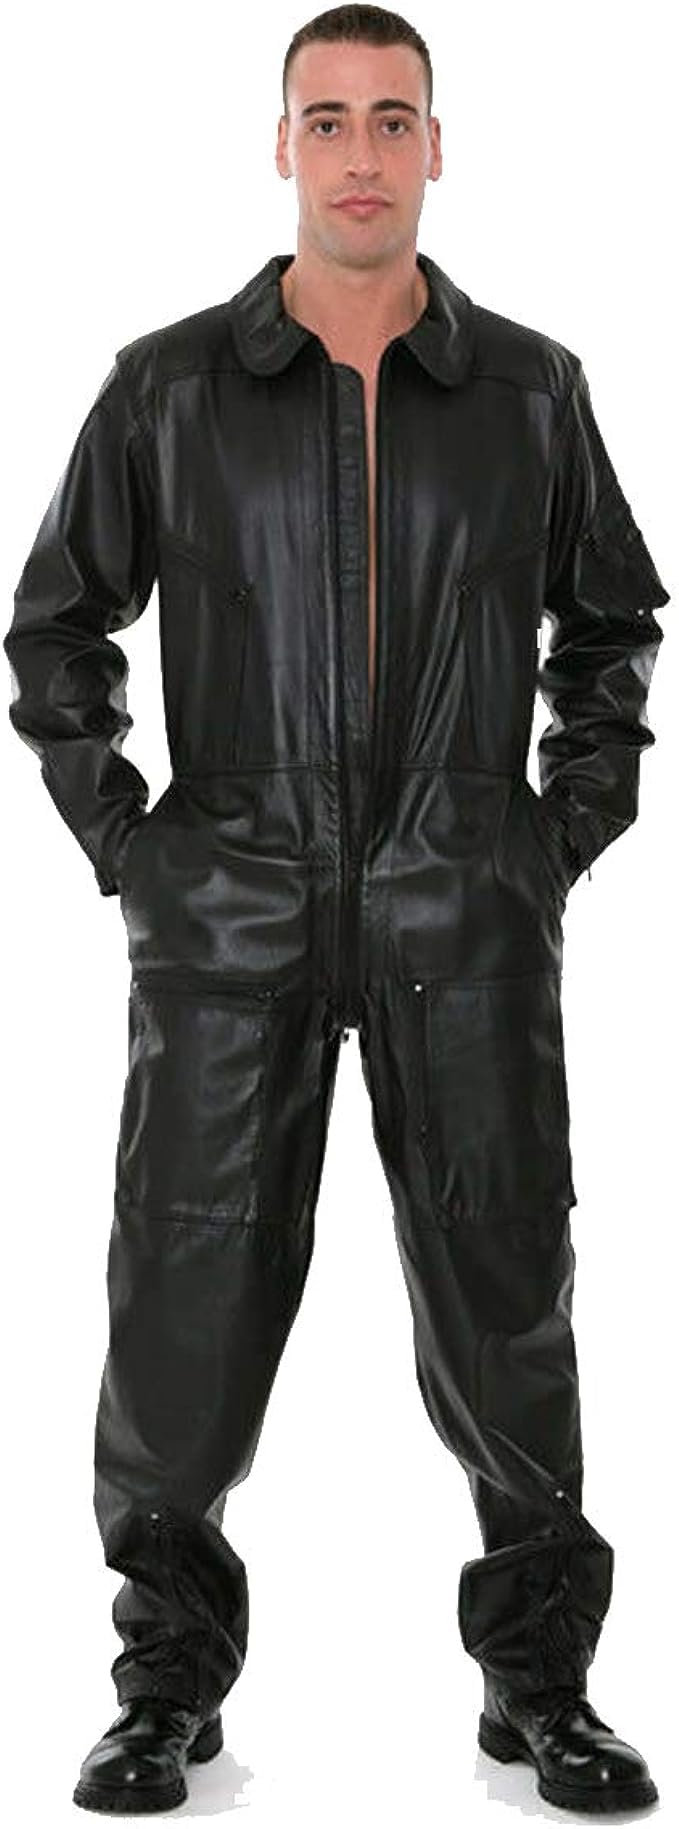 OUTFITIX Men's Genuine Cowhide Black Leather Overall Dungaree Jumpsuit Dress Flight Suit Pilot Uniform